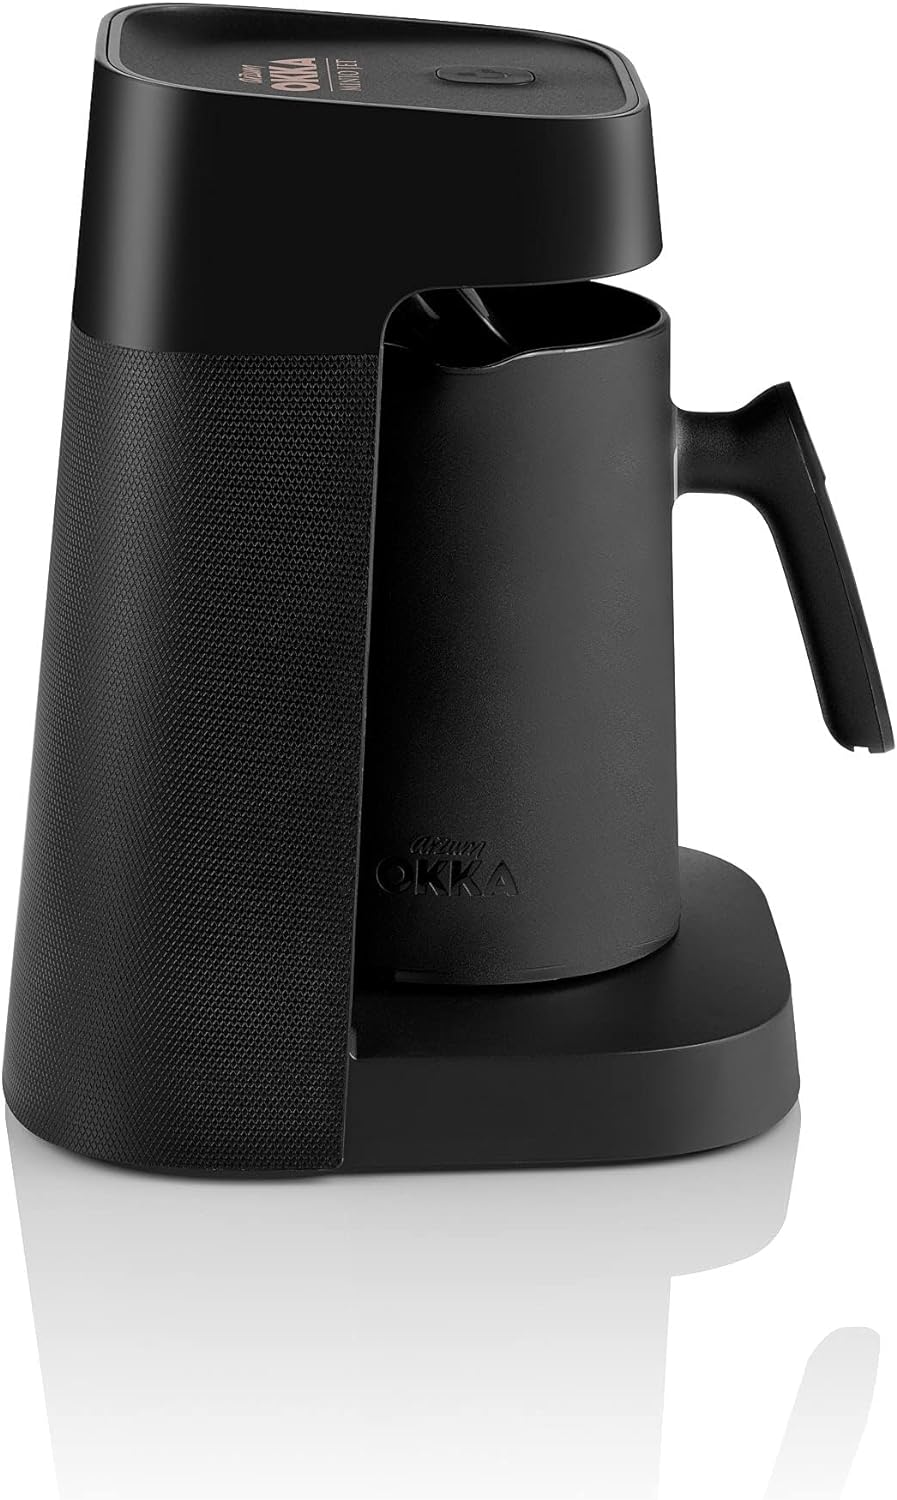 Arzum Okka Jet Automatische Türkische Kaffeemaschine OK0017-Kupfer